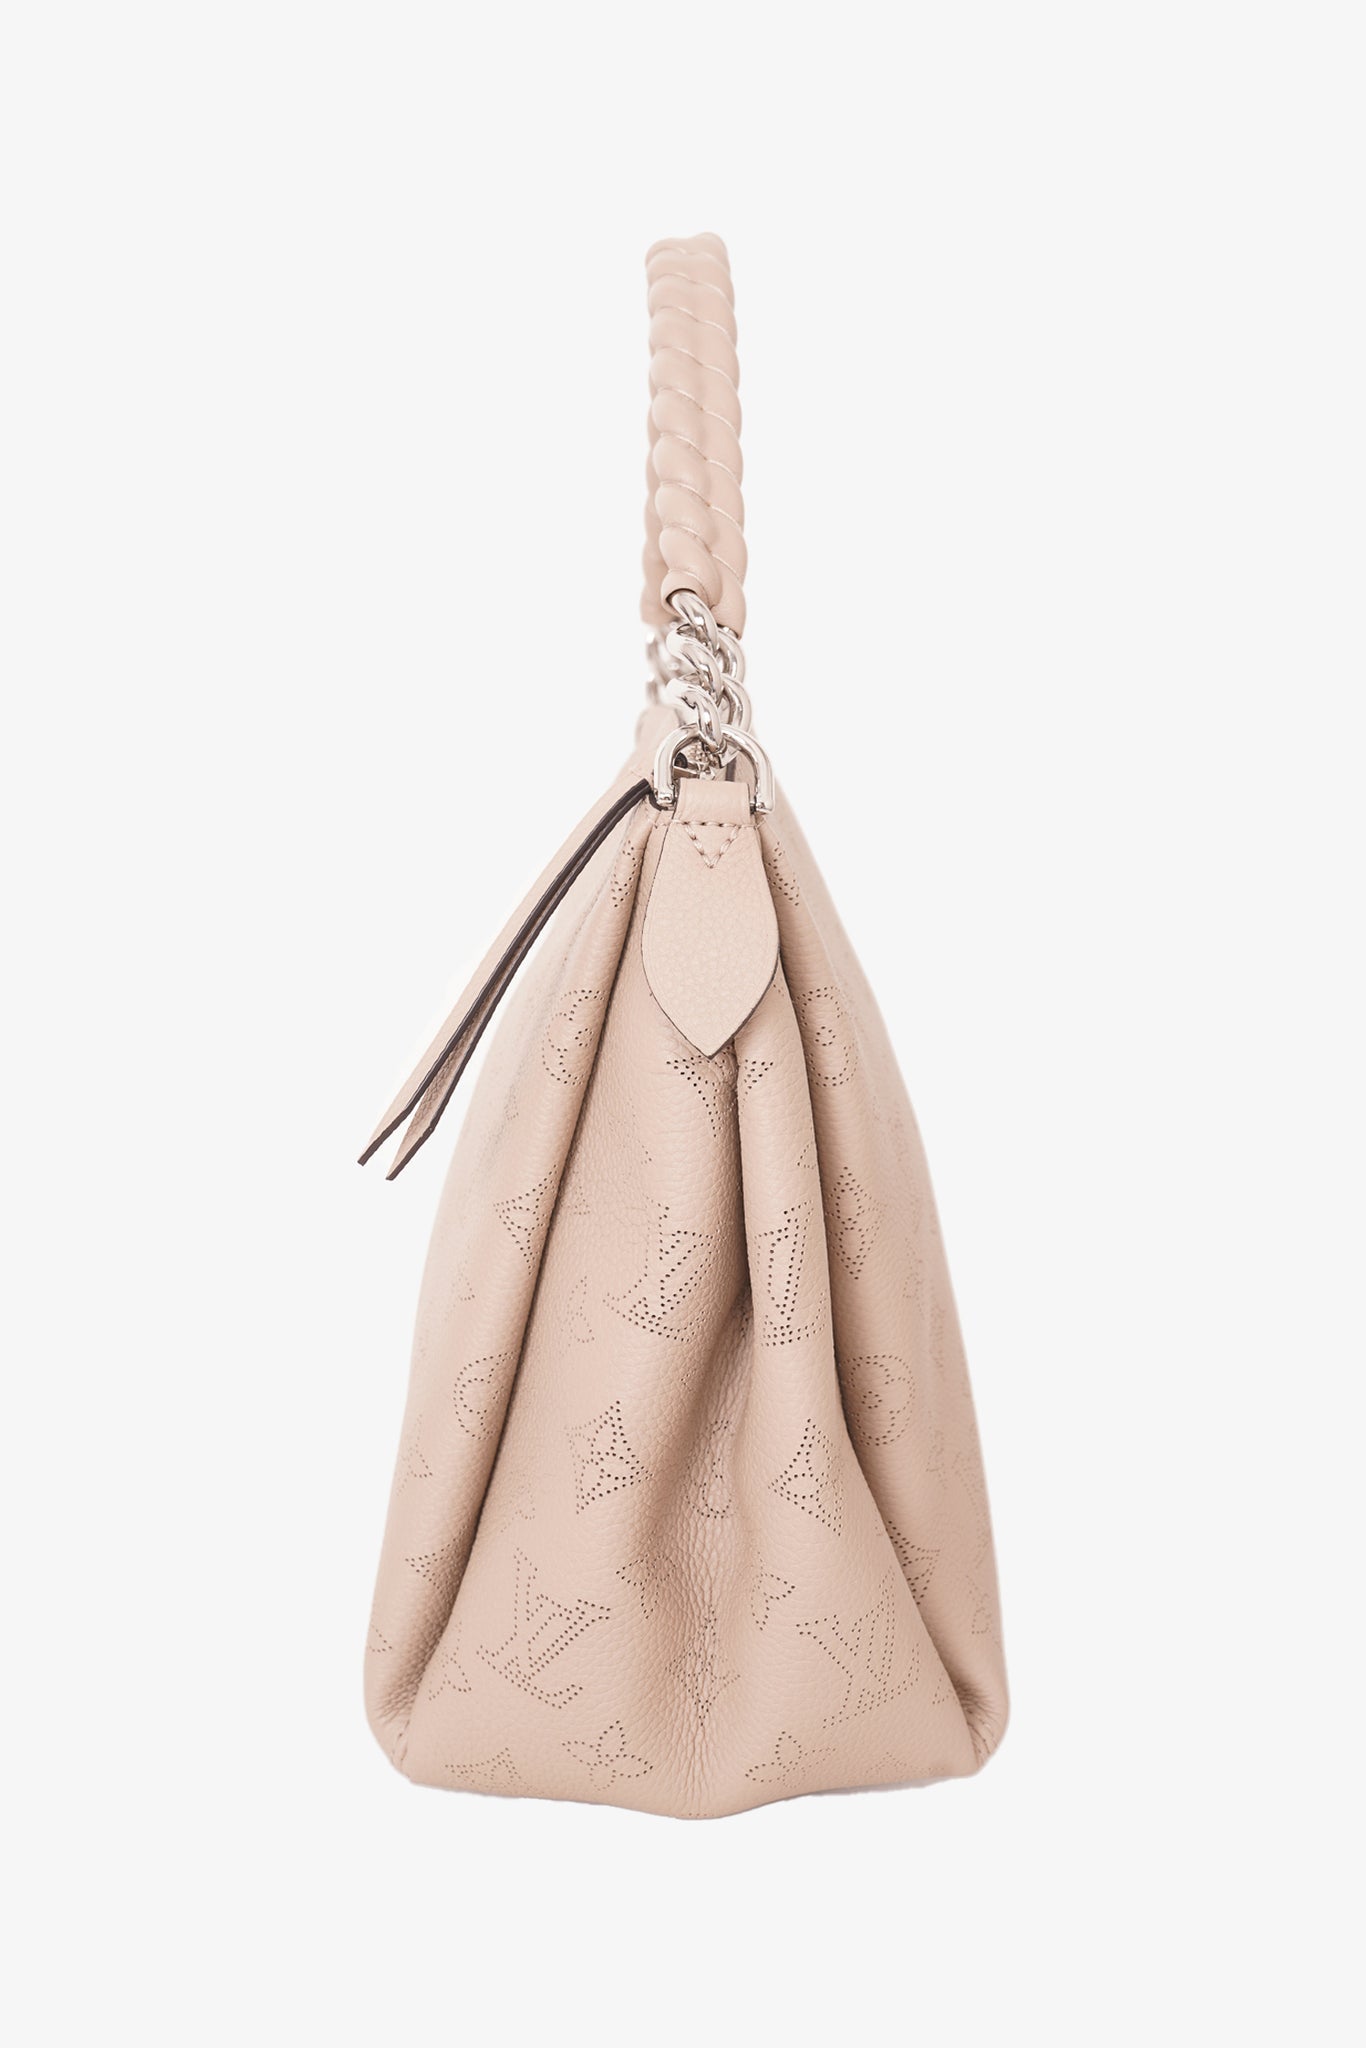 Chanel 22 Handbag – Lux Afrique Boutique